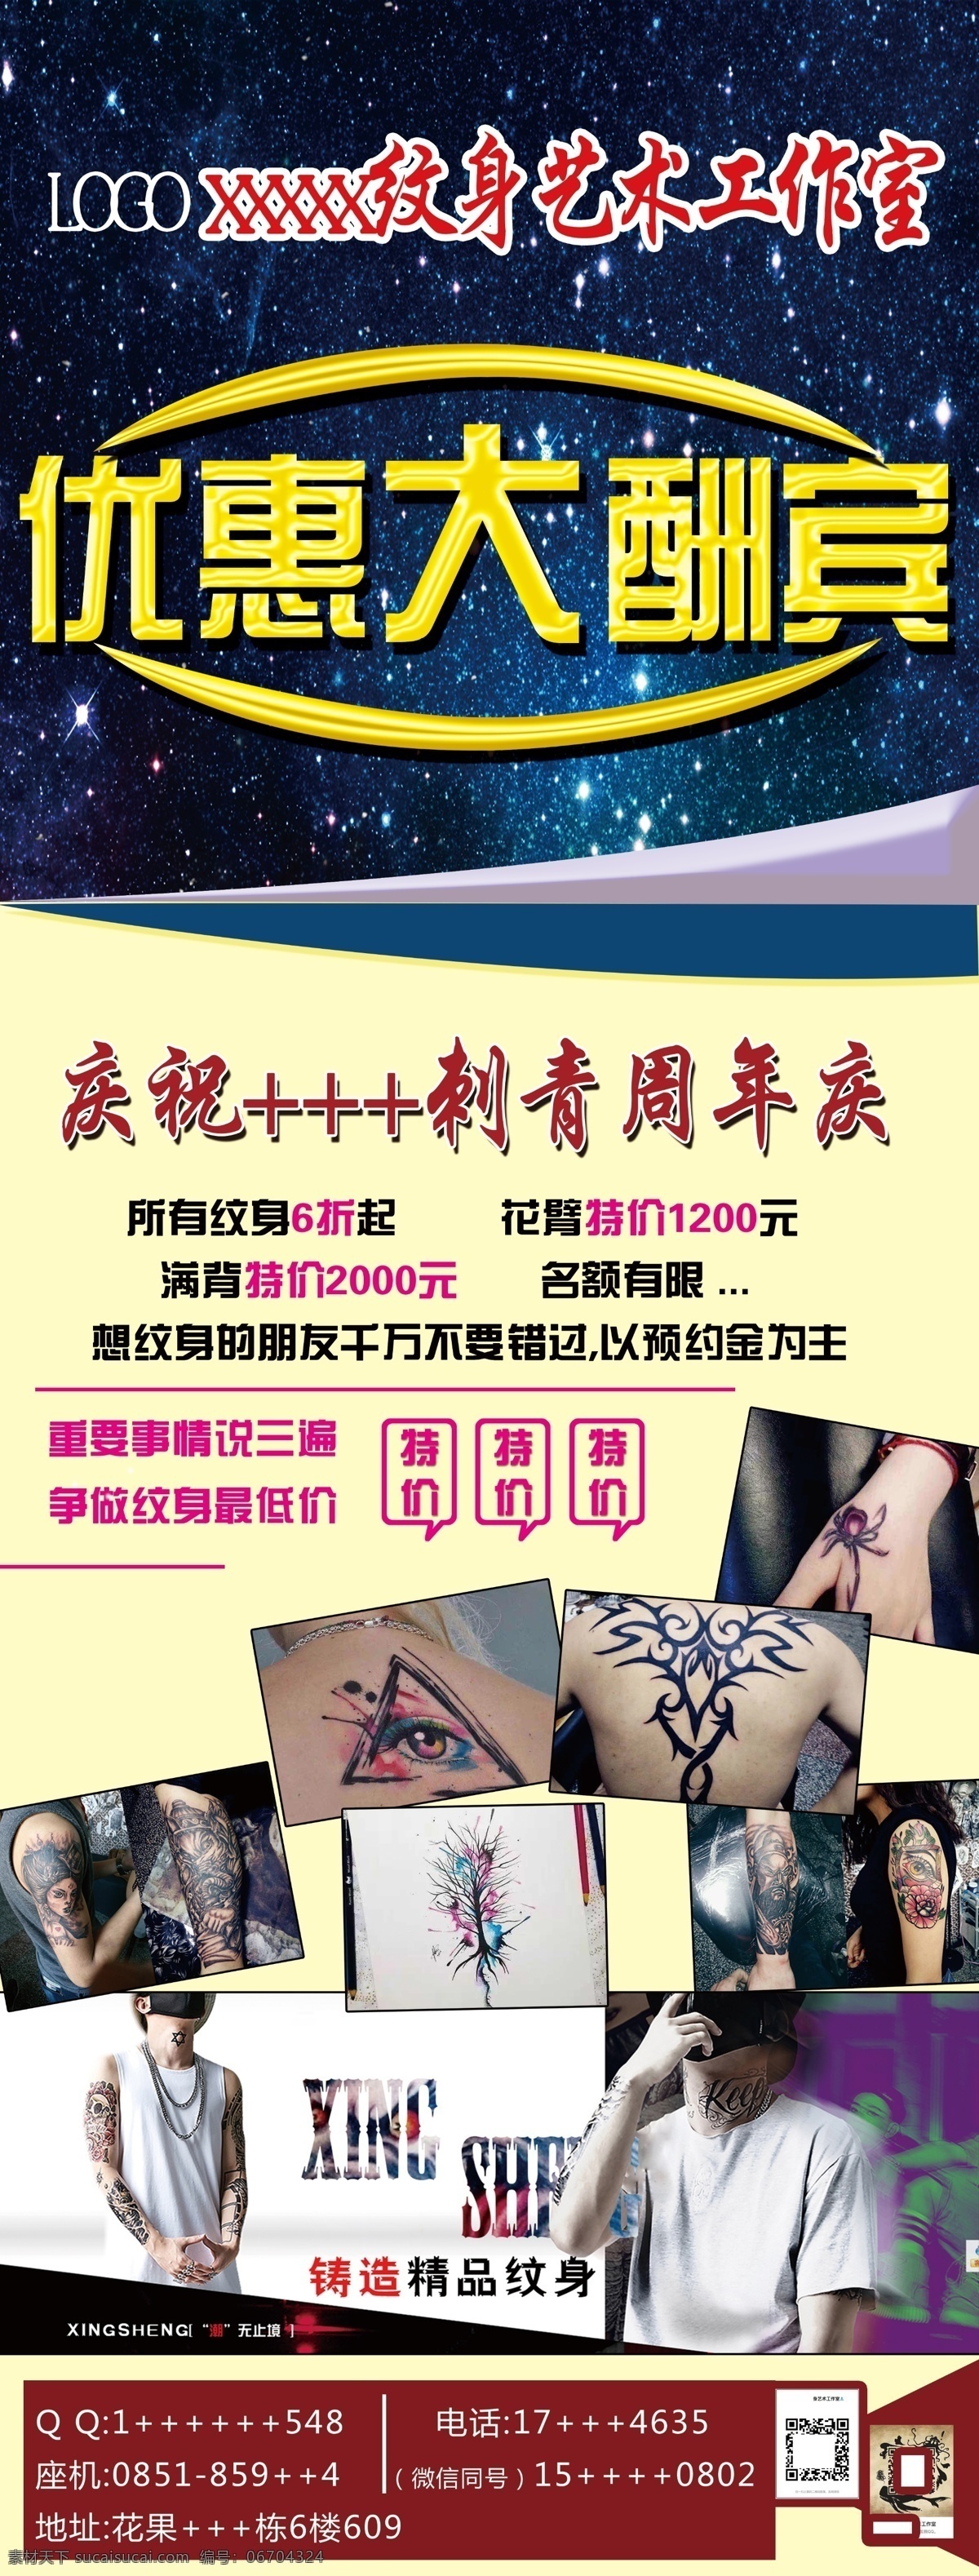 纹身海报 纹身广告 纹身 纹身图片 纹身原素 优惠大酬宾 纹身展架 纹身活动